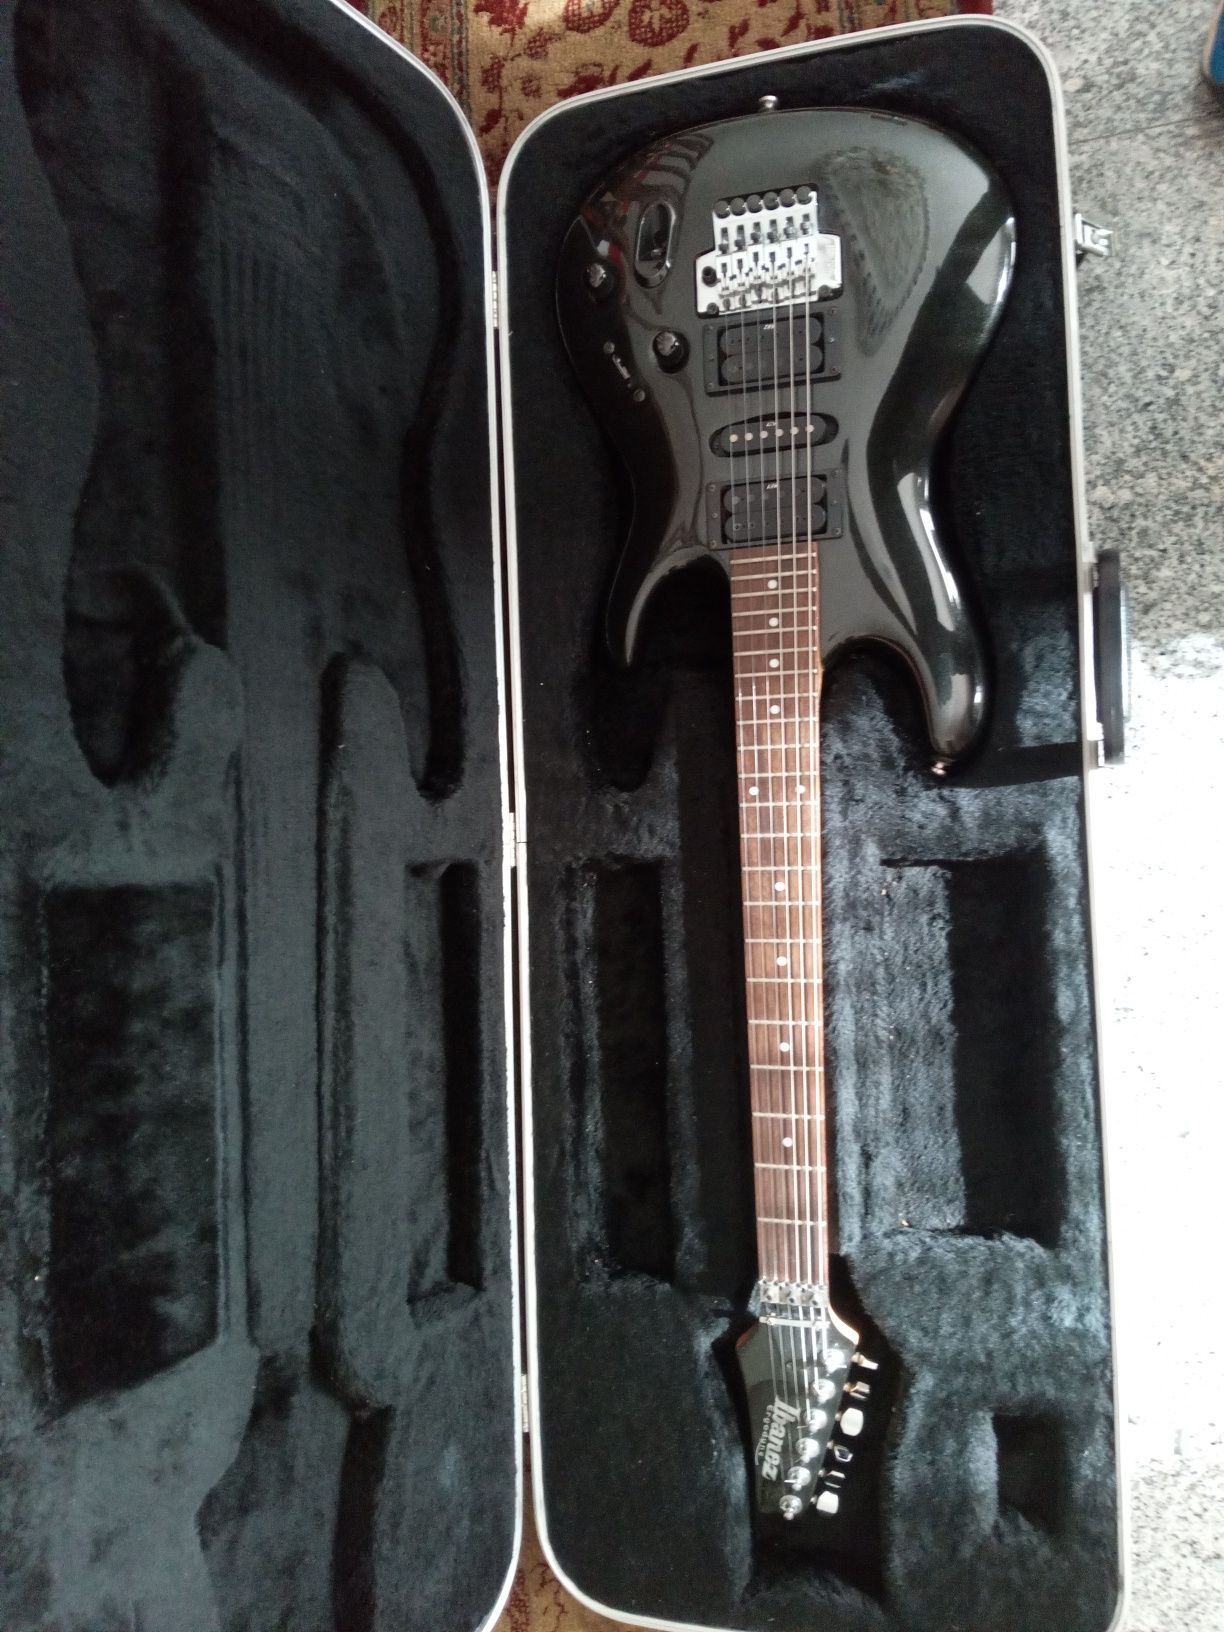 Guitarra Ibanez EDR 470